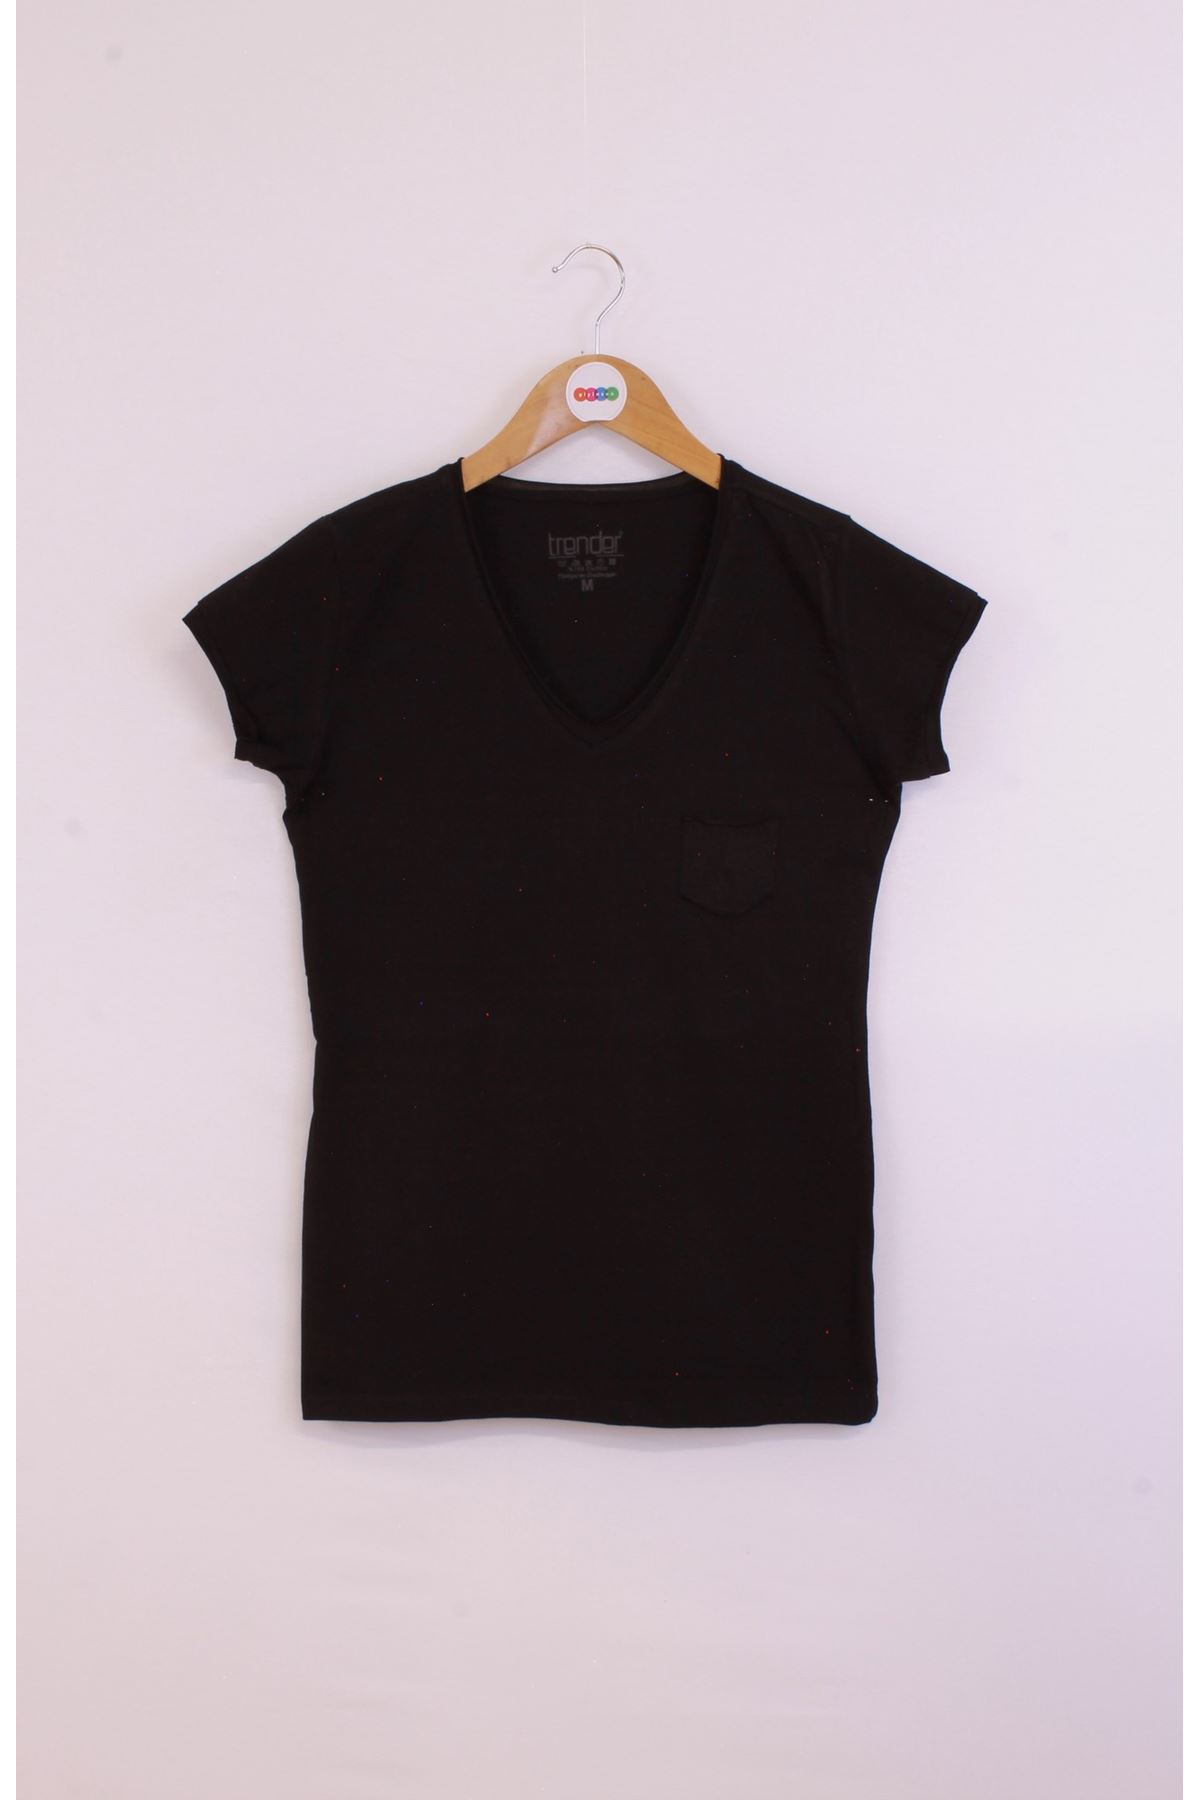 Giyinsen Kadın Siyah Tişört - 23YL71595004